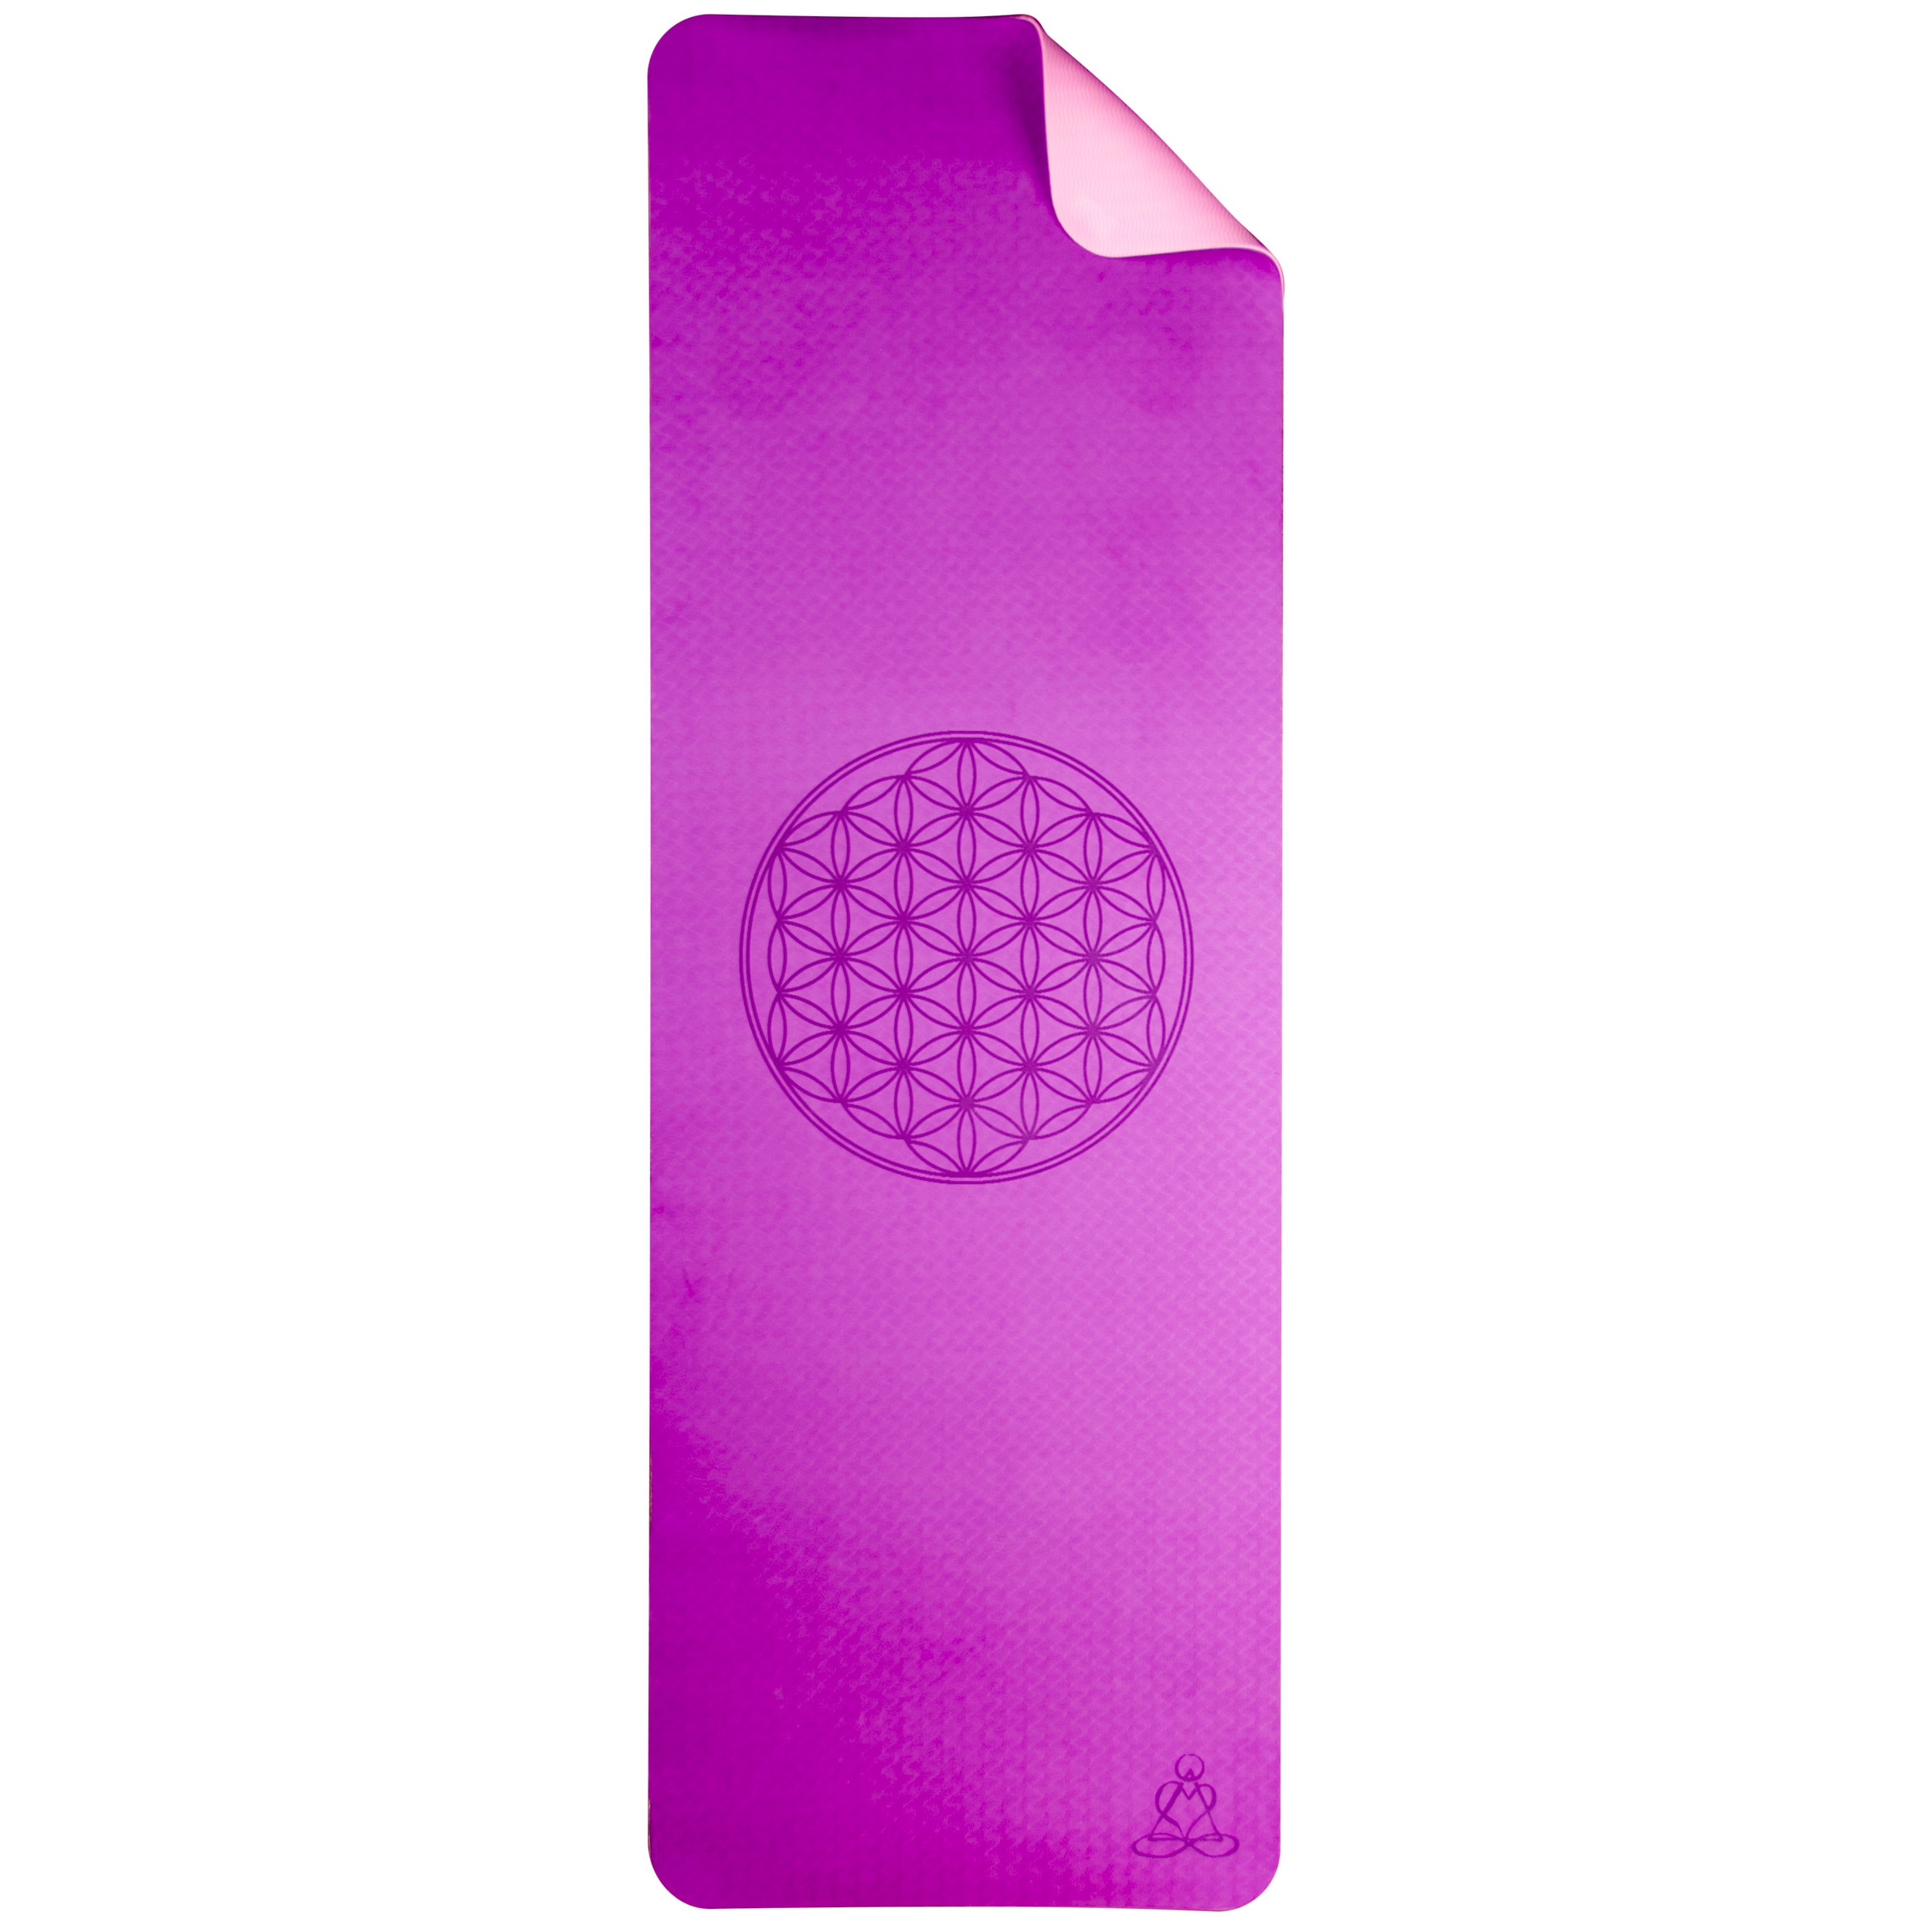 Yogamatte - Blume des Lebens - ca. 182 x 61 cm - weich und rutschfest - gut für Allergiker - Purpur, Pink